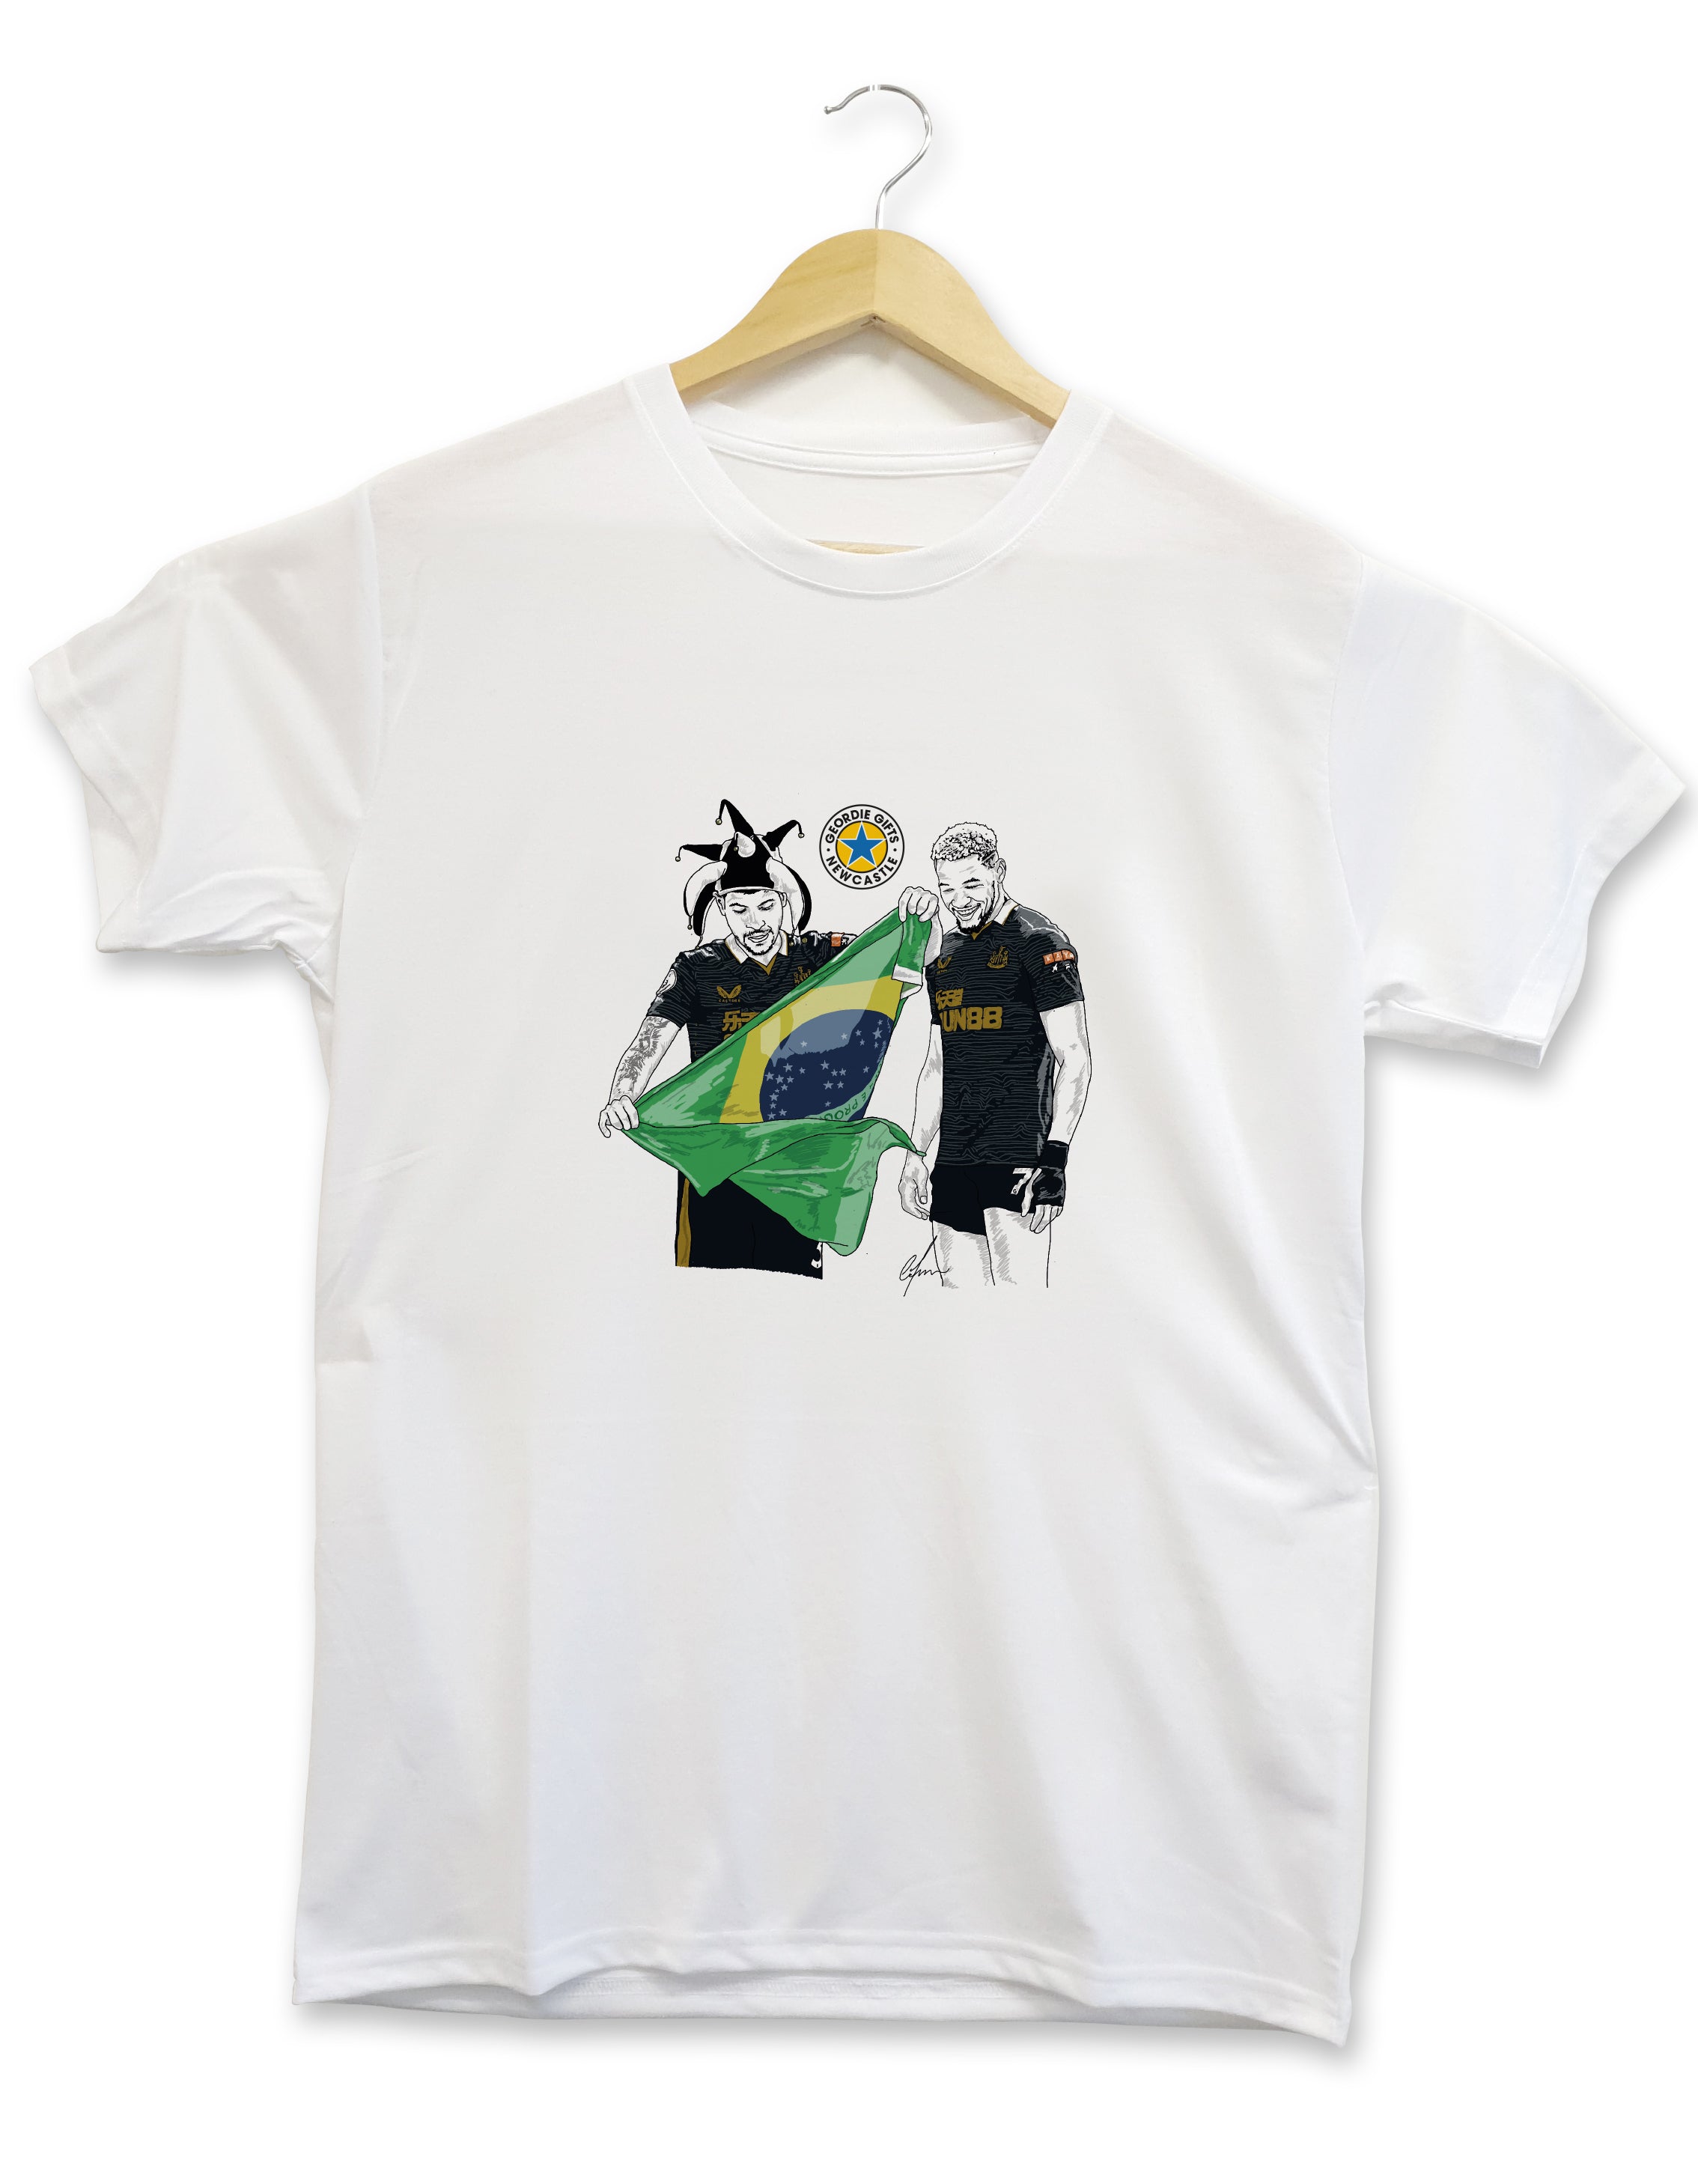 Bruno Guimarães Joelinton | Tshirt | Newcastle Utd Merchandise Geordie Gifts